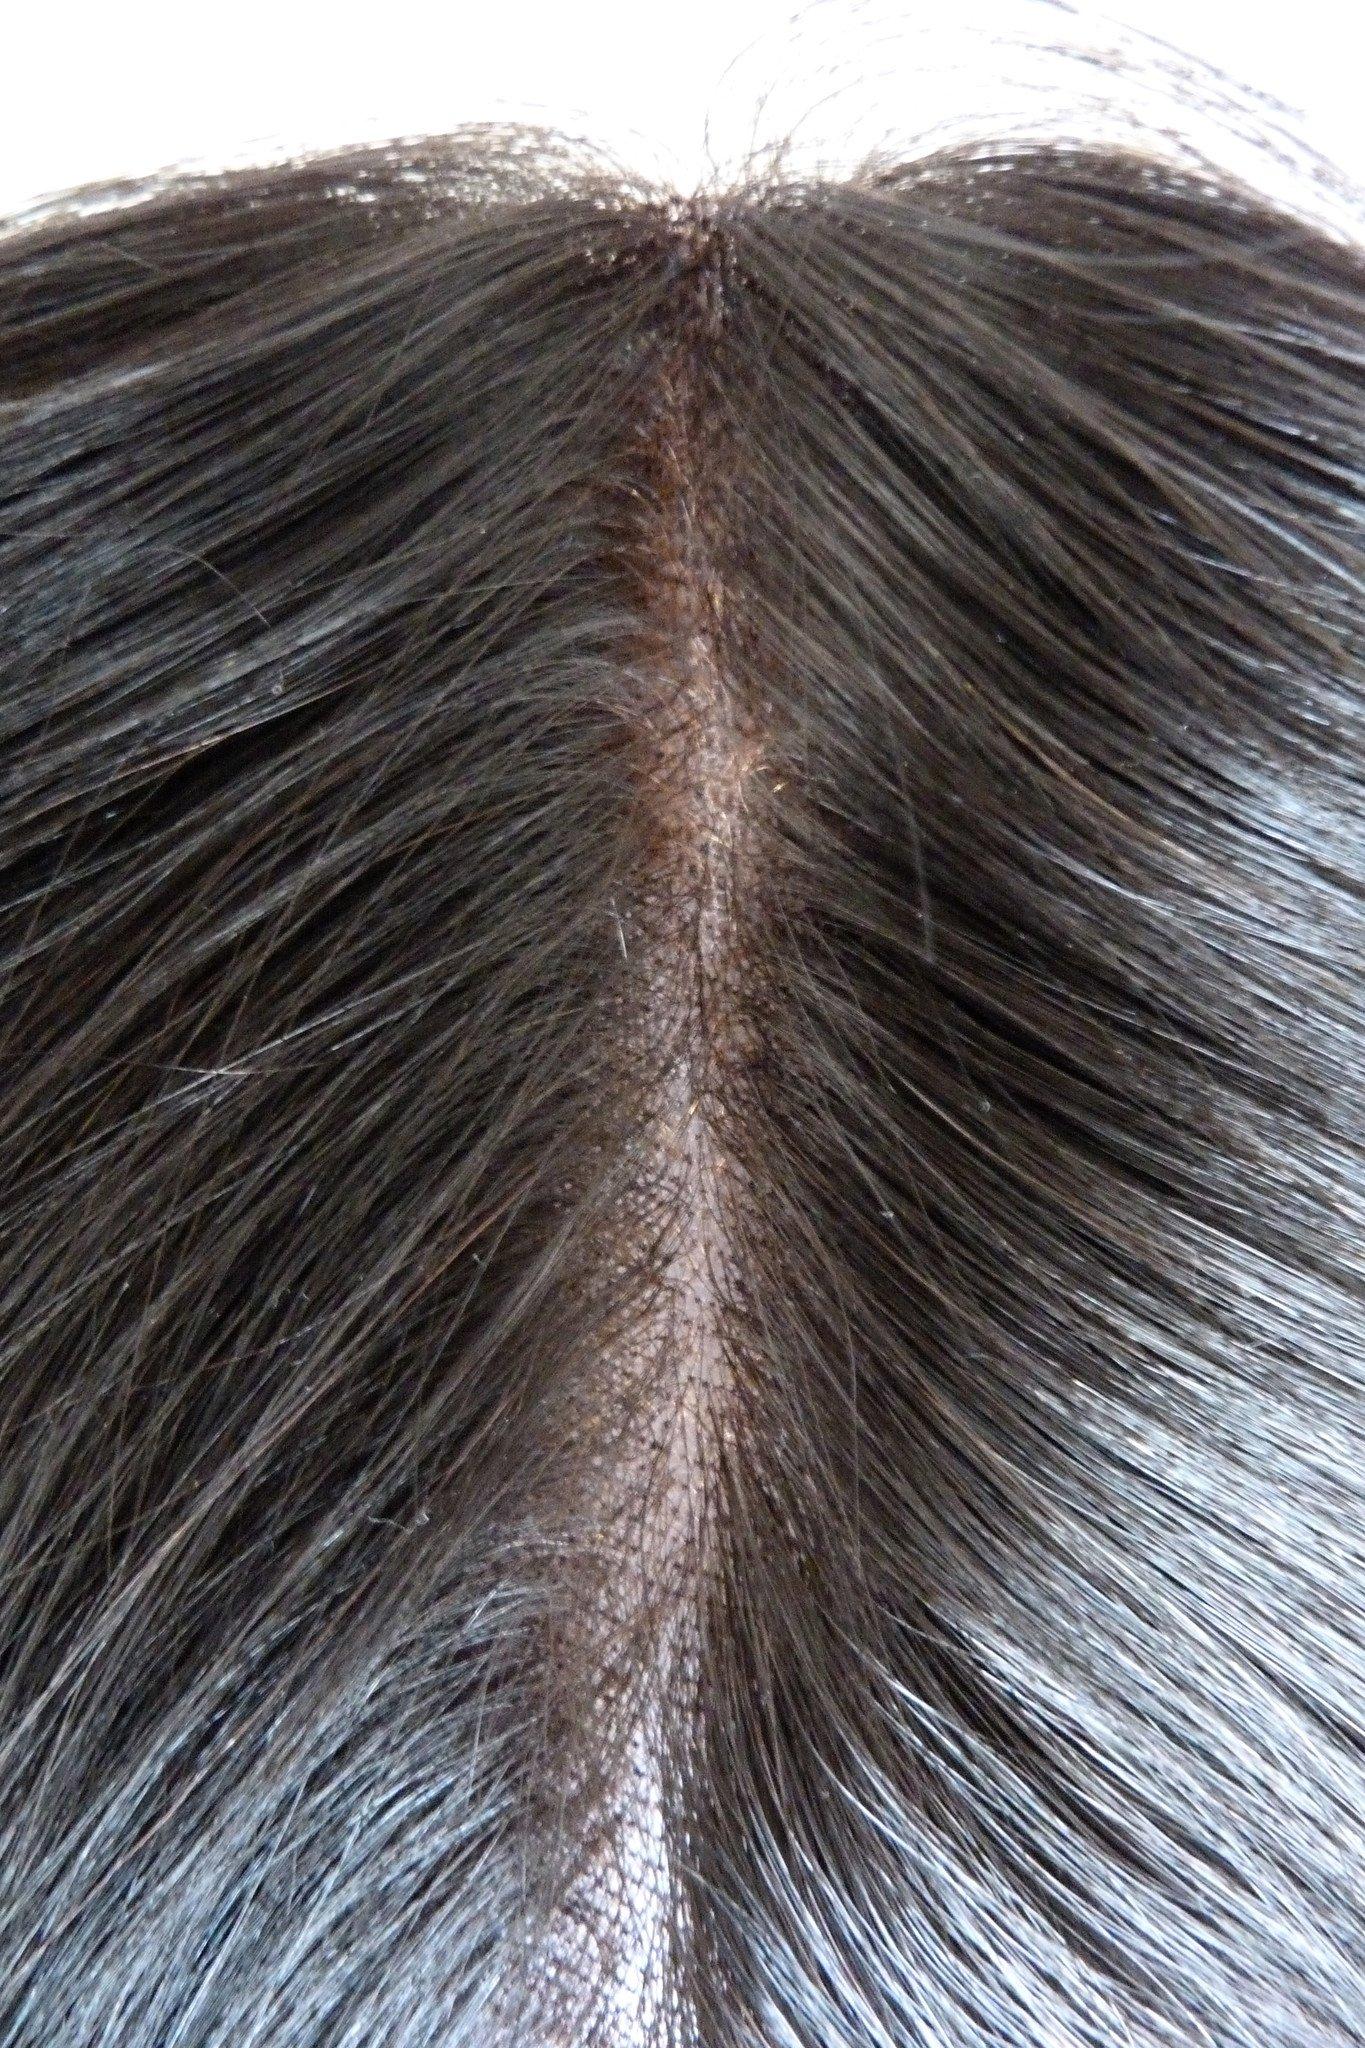 Fermeture supérieure en dentelle indienne vierge Remy – 8,9 x 10,2 cm – Cheveux vierges et beauté, les meilleures extensions de cheveux, vrais cheveux humains vierges.